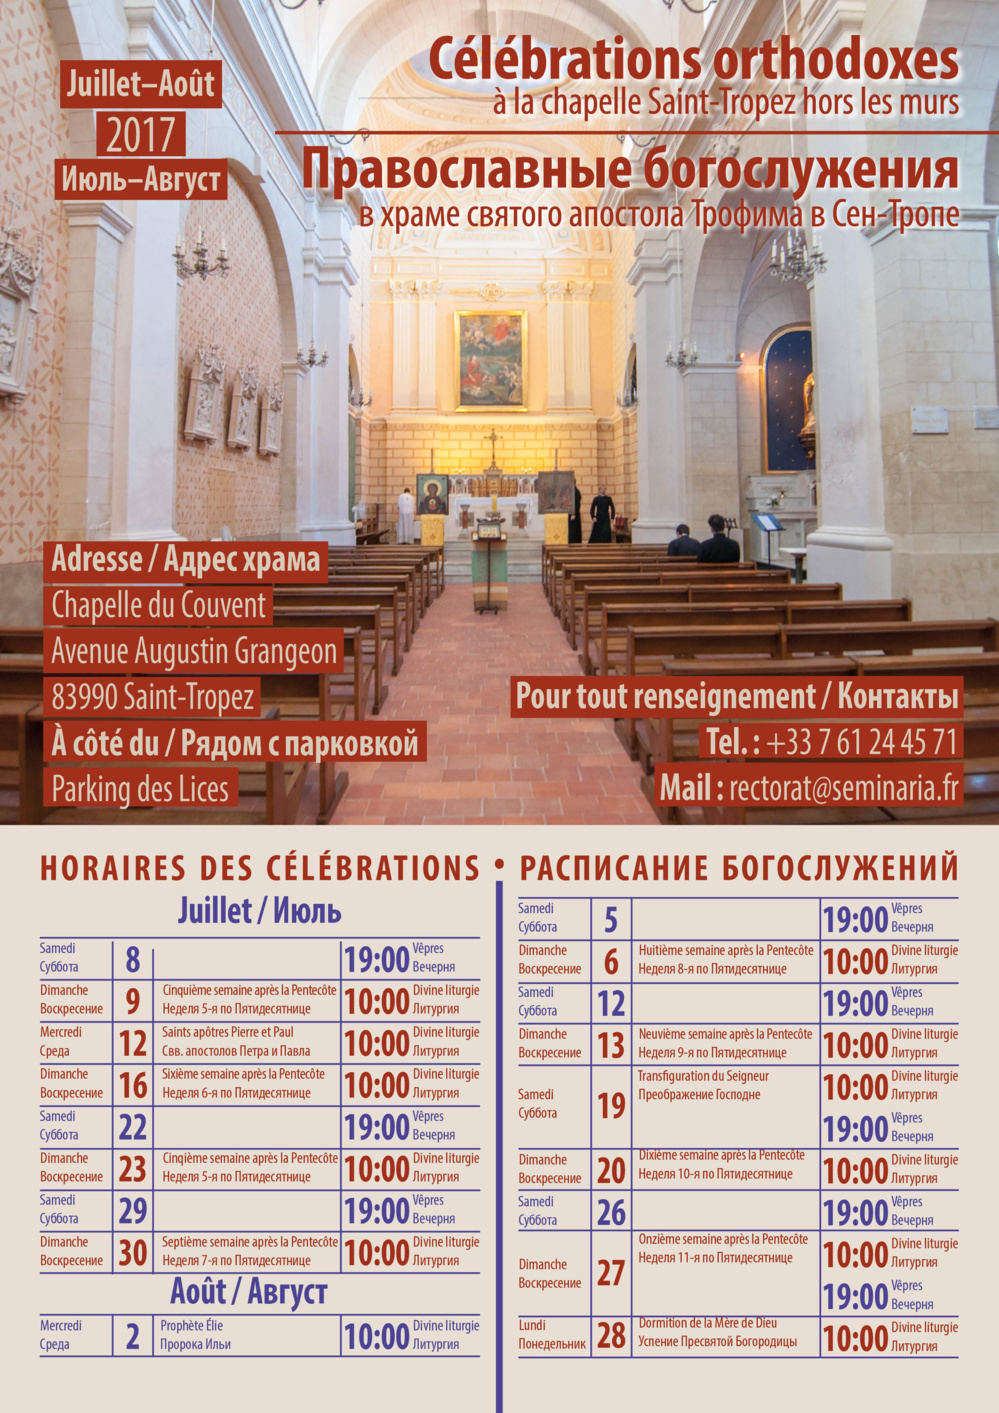 Horaires des célébrations orthodoxes à Saint-Tropez en été 2017